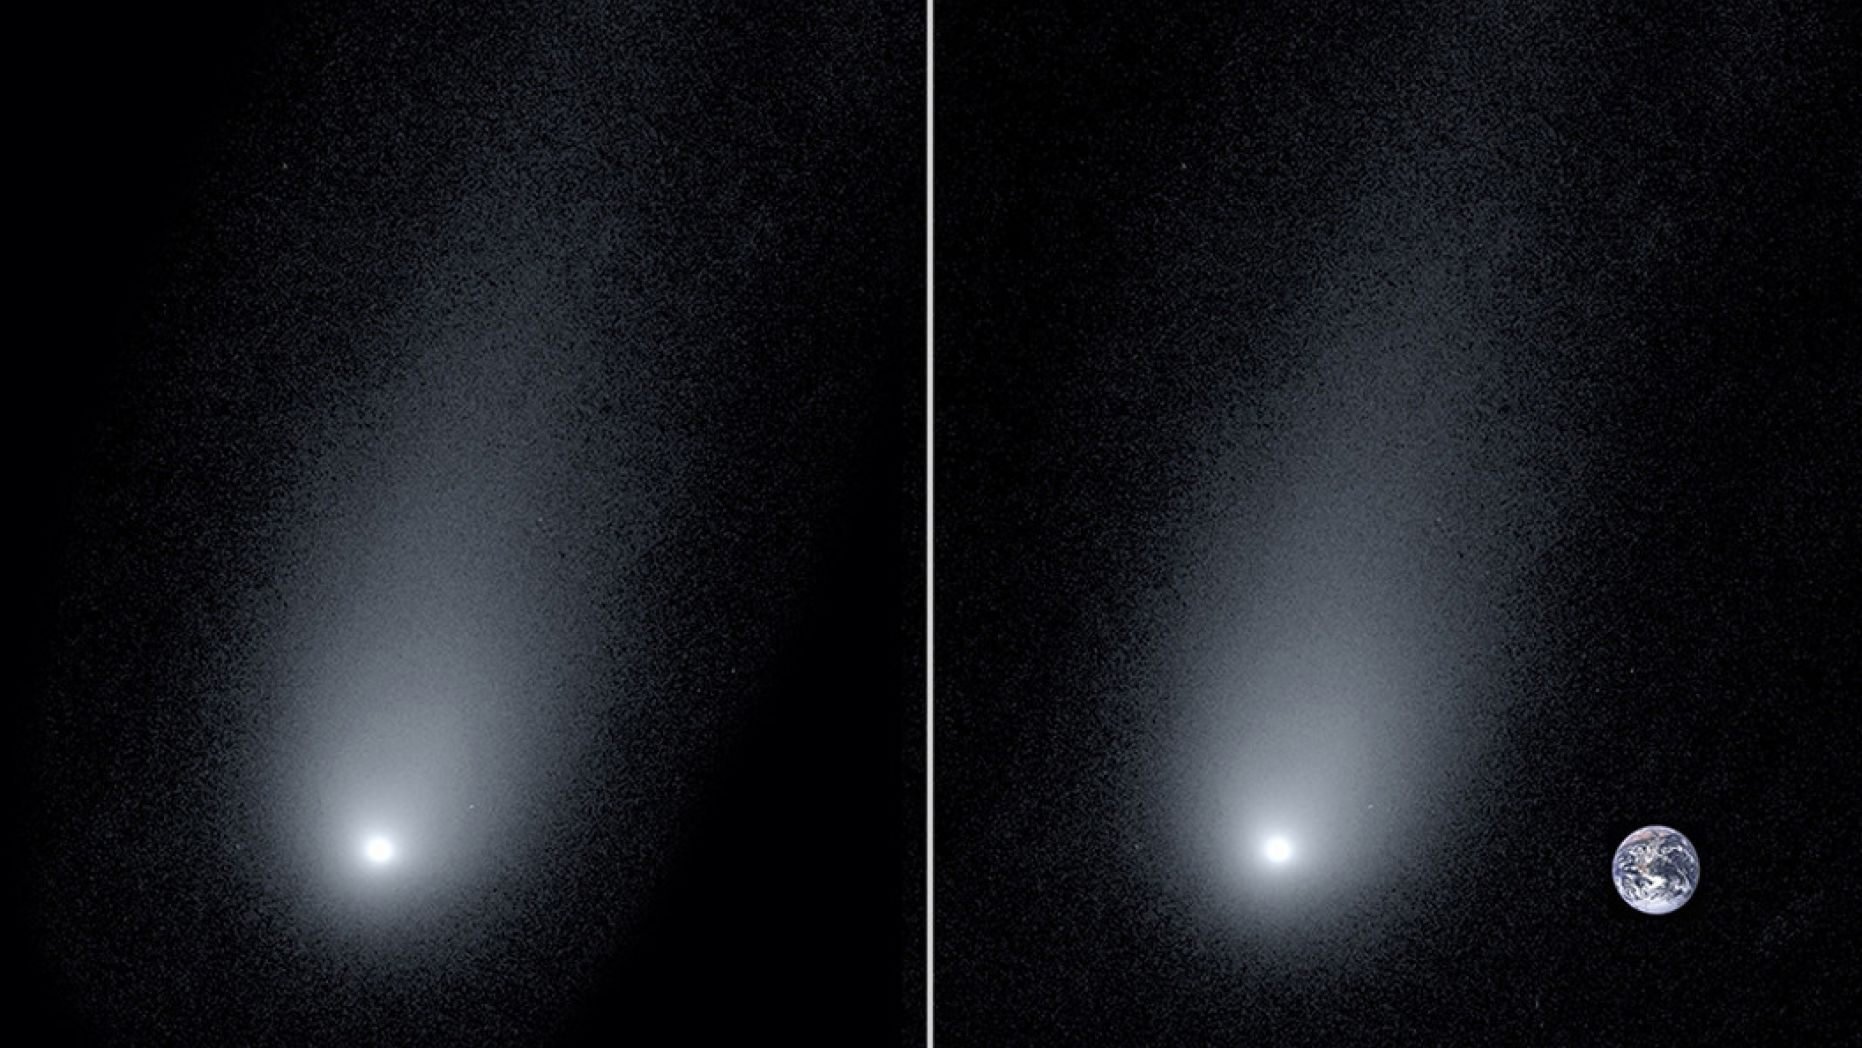 Imagem do cometa interestelar Borisov e uma comparação de seu tamanho com o da Terra